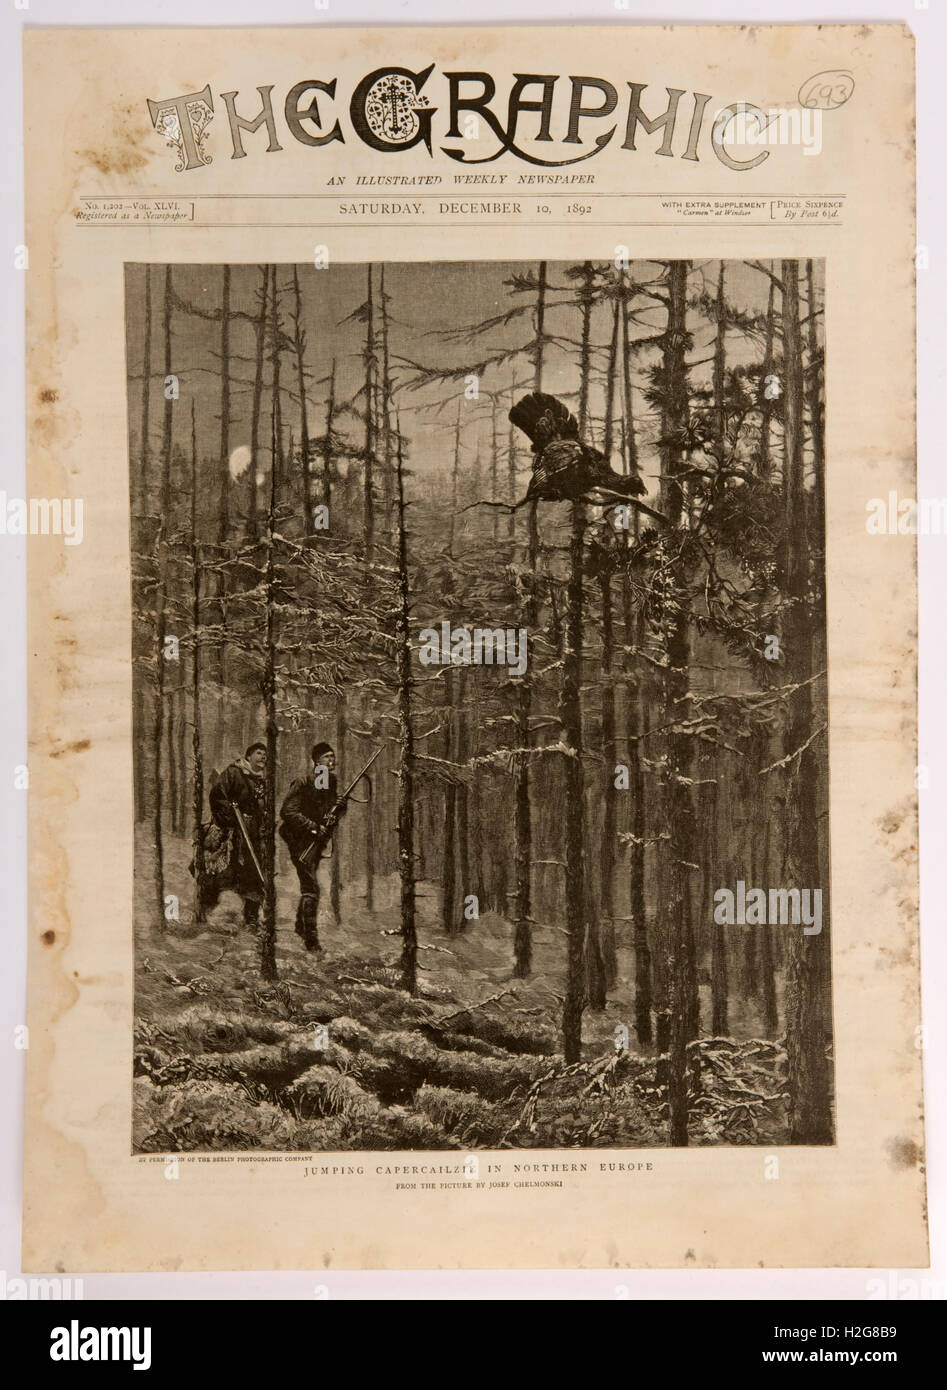 Portada de el gráfico ilustra un periódico semanal desde el 10 de diciembre de 1892, mostrando una Capercailie siendo cazado en un bosque i Foto de stock